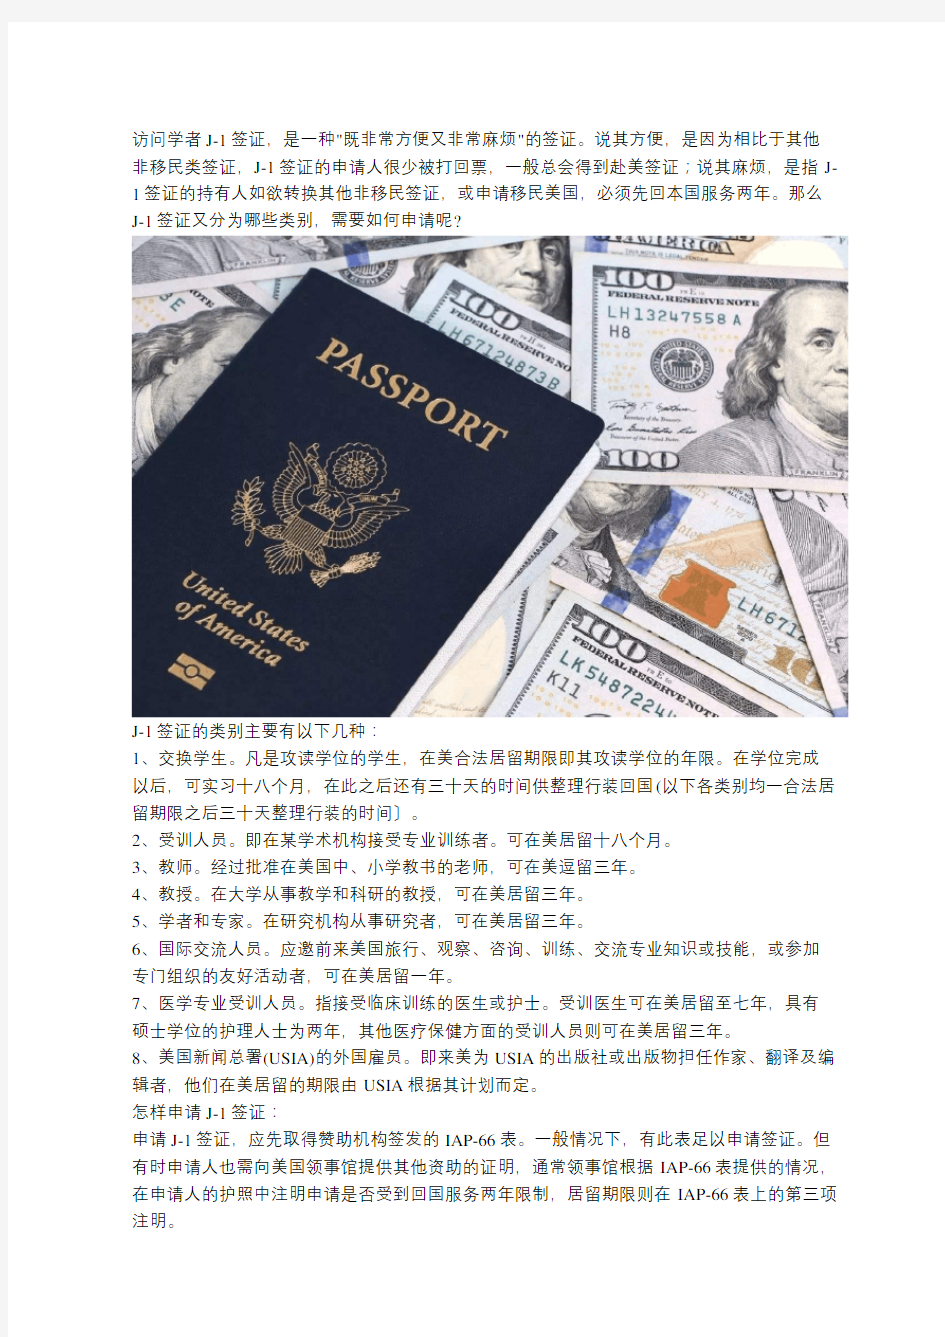 申请美国访问学者J1签证的常见问题